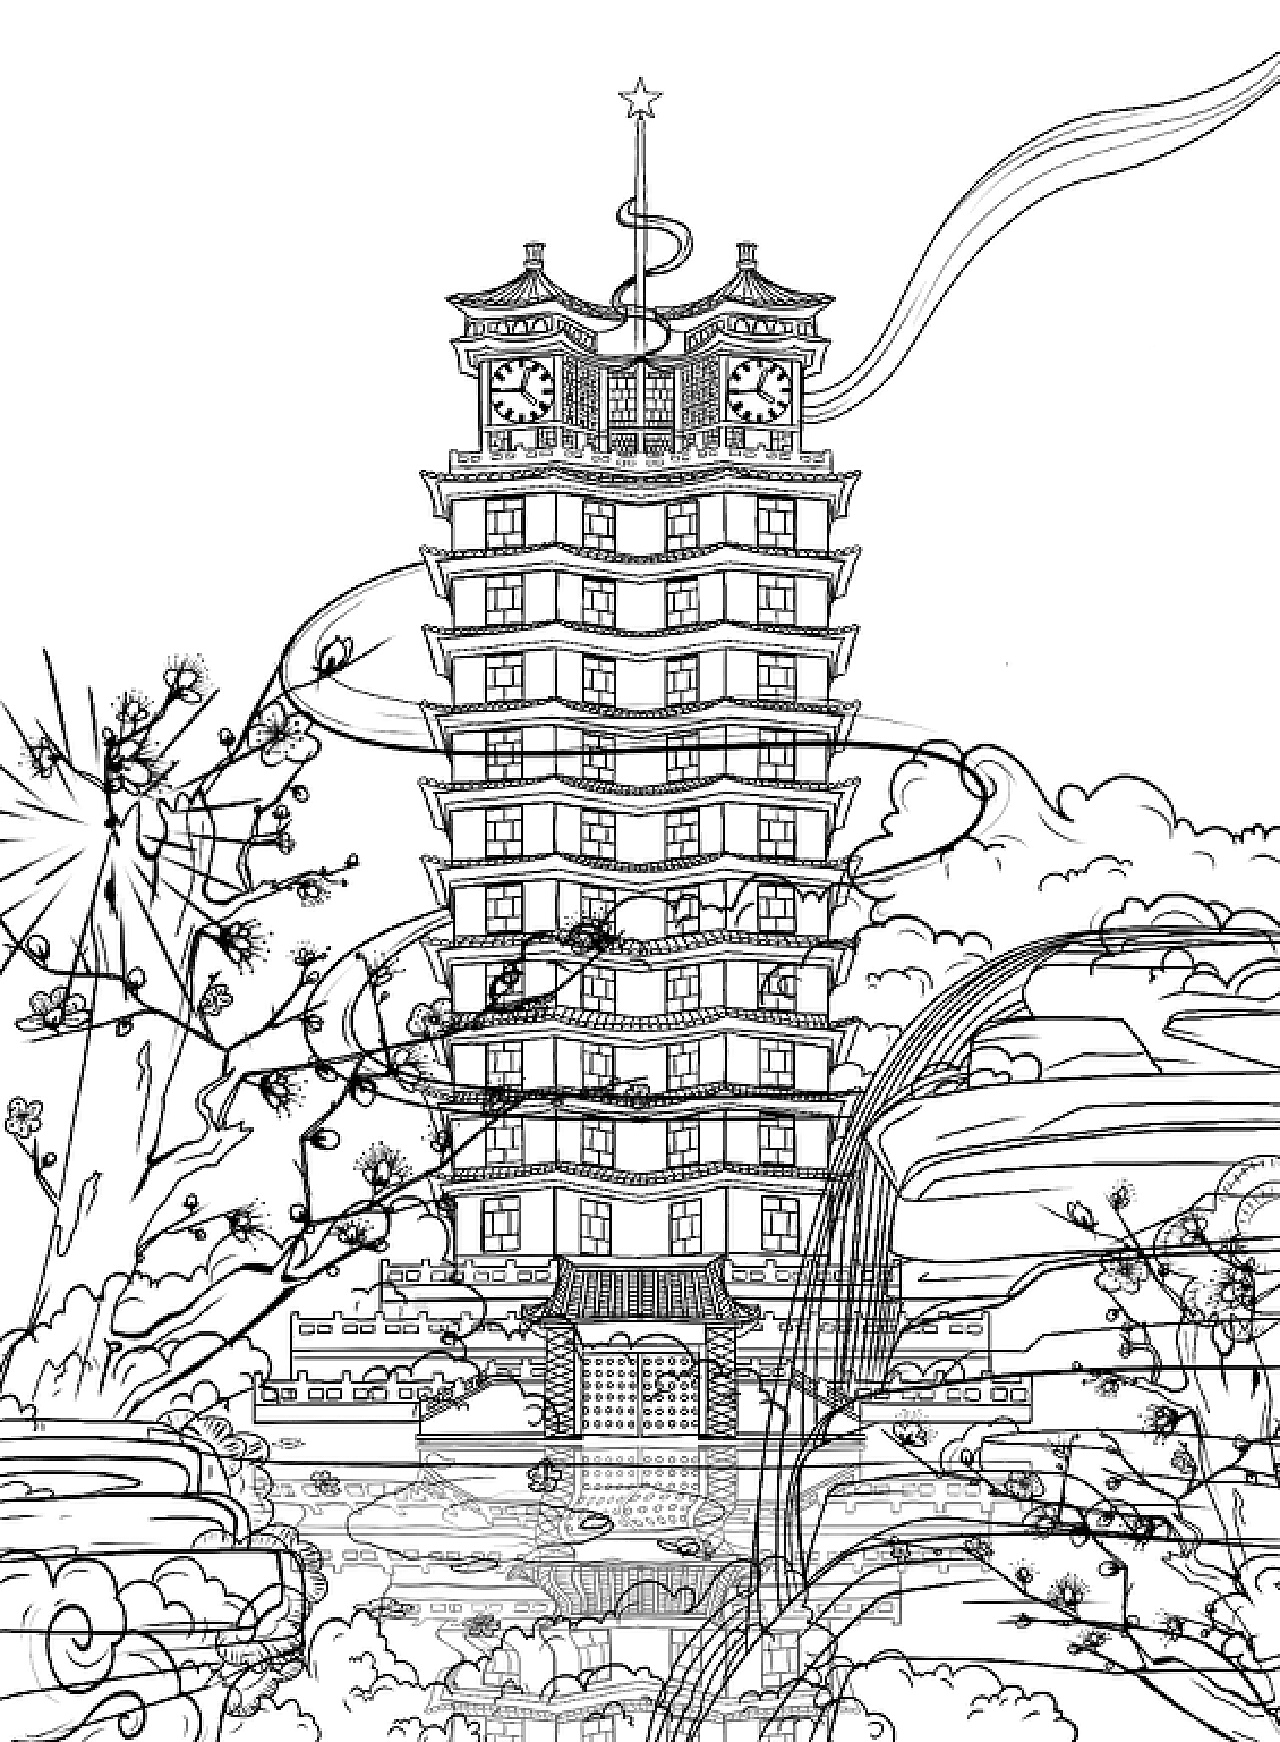 河南 郑州—二七纪念塔插画设计